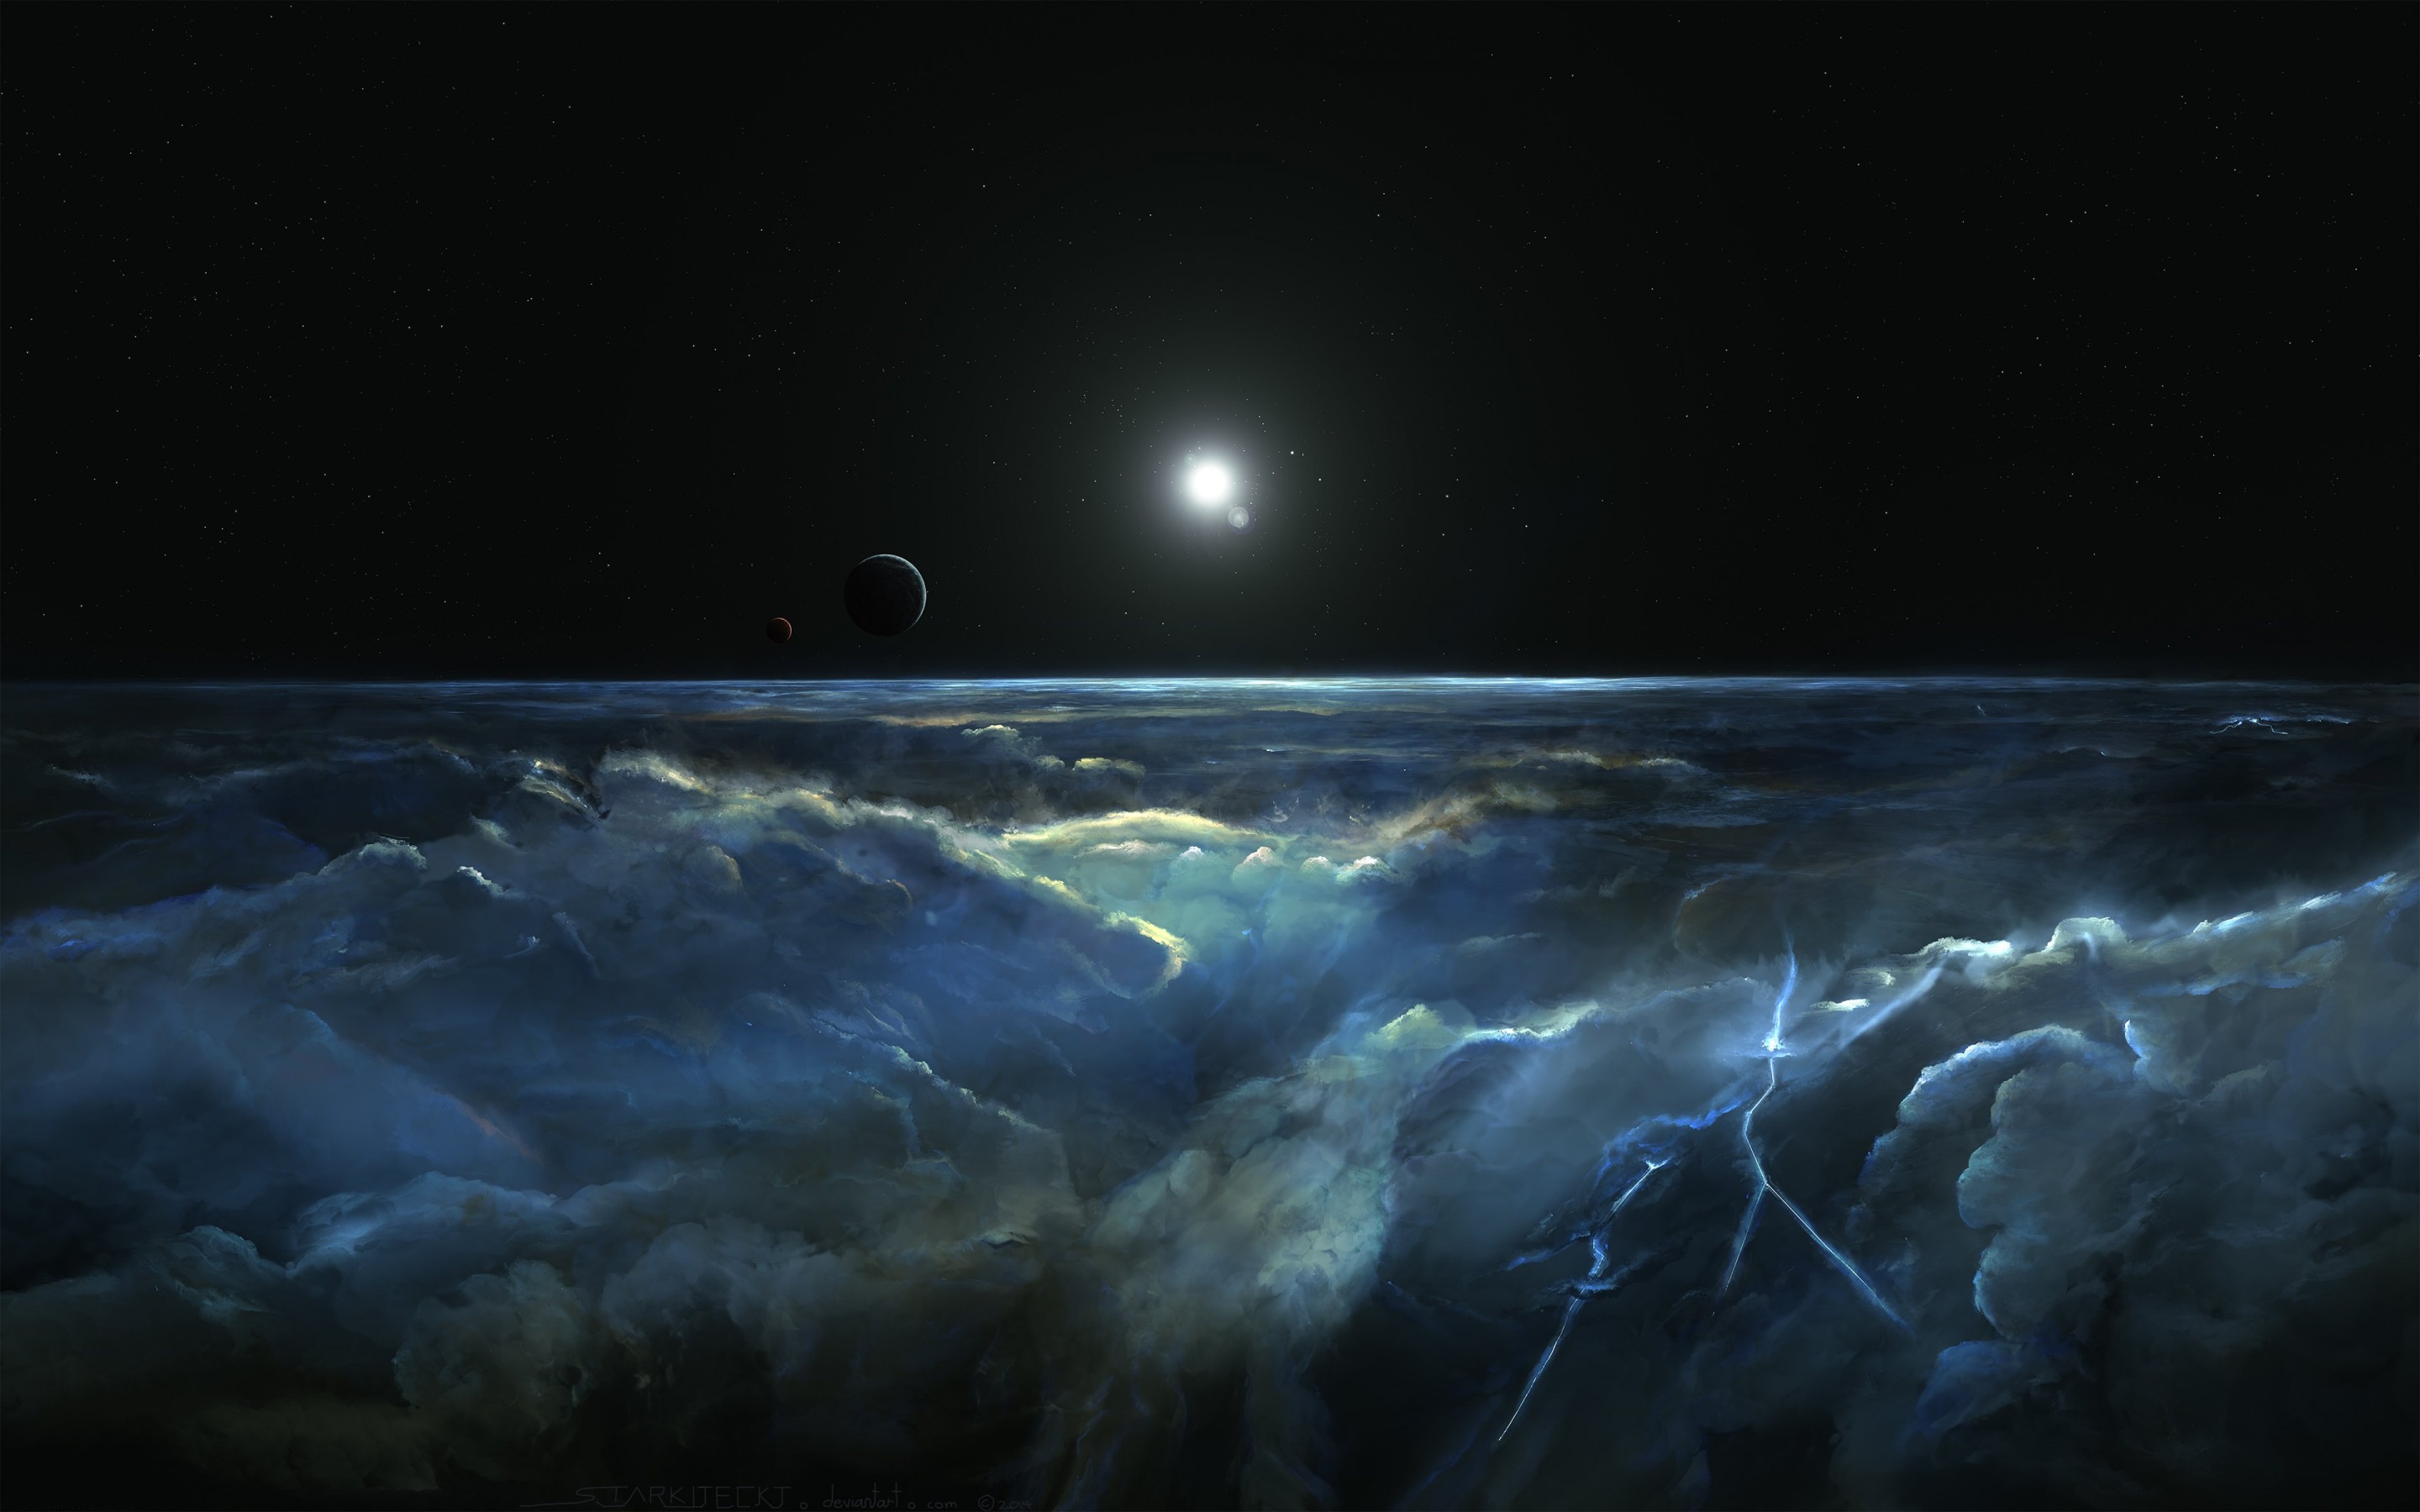 Stormy Atmosphere of Merphlyn Wallpaper for Desktop 2880x1800